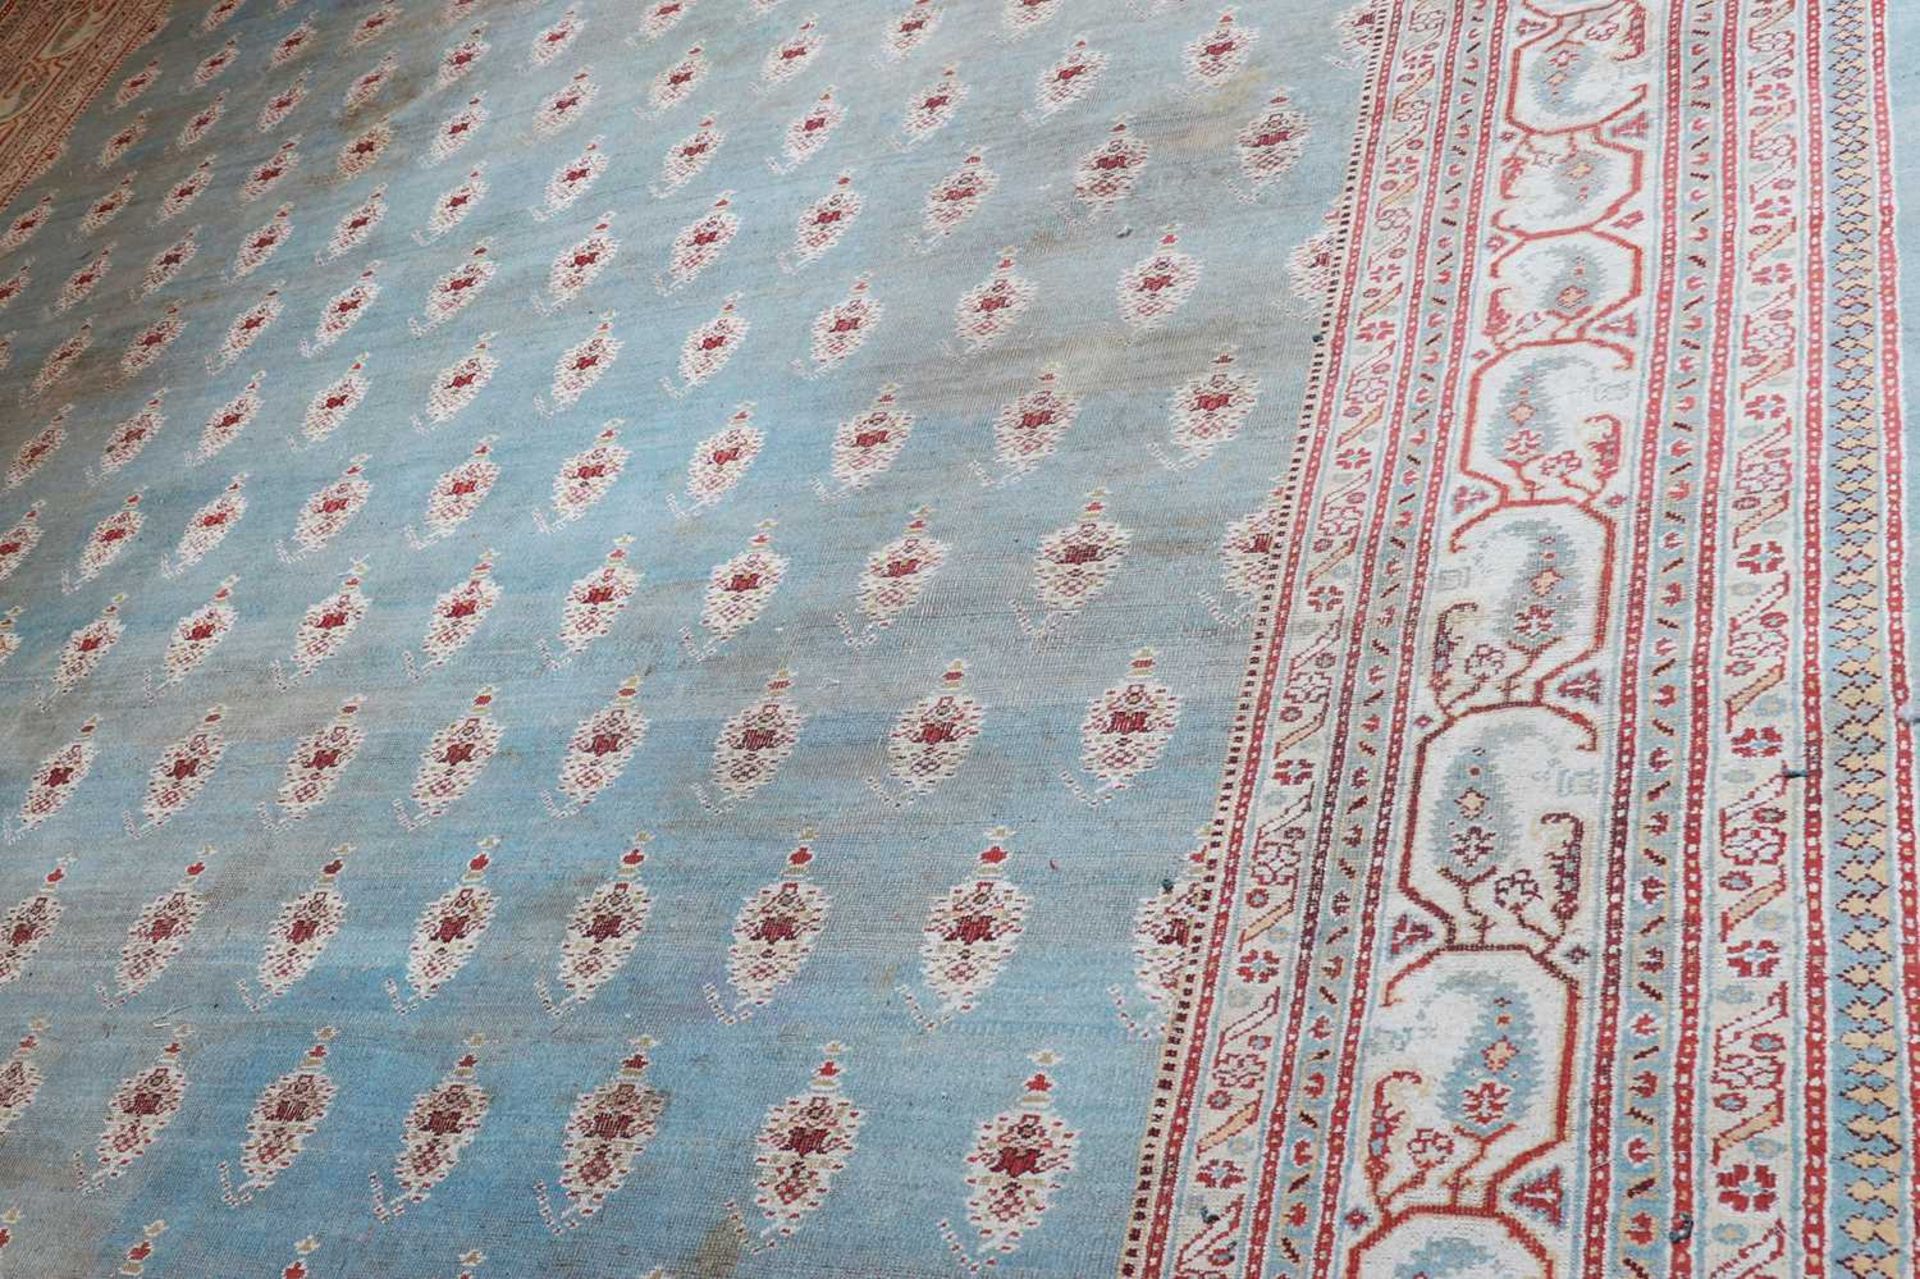 ☘ A large blue Amritsar carpet, - Image 8 of 38